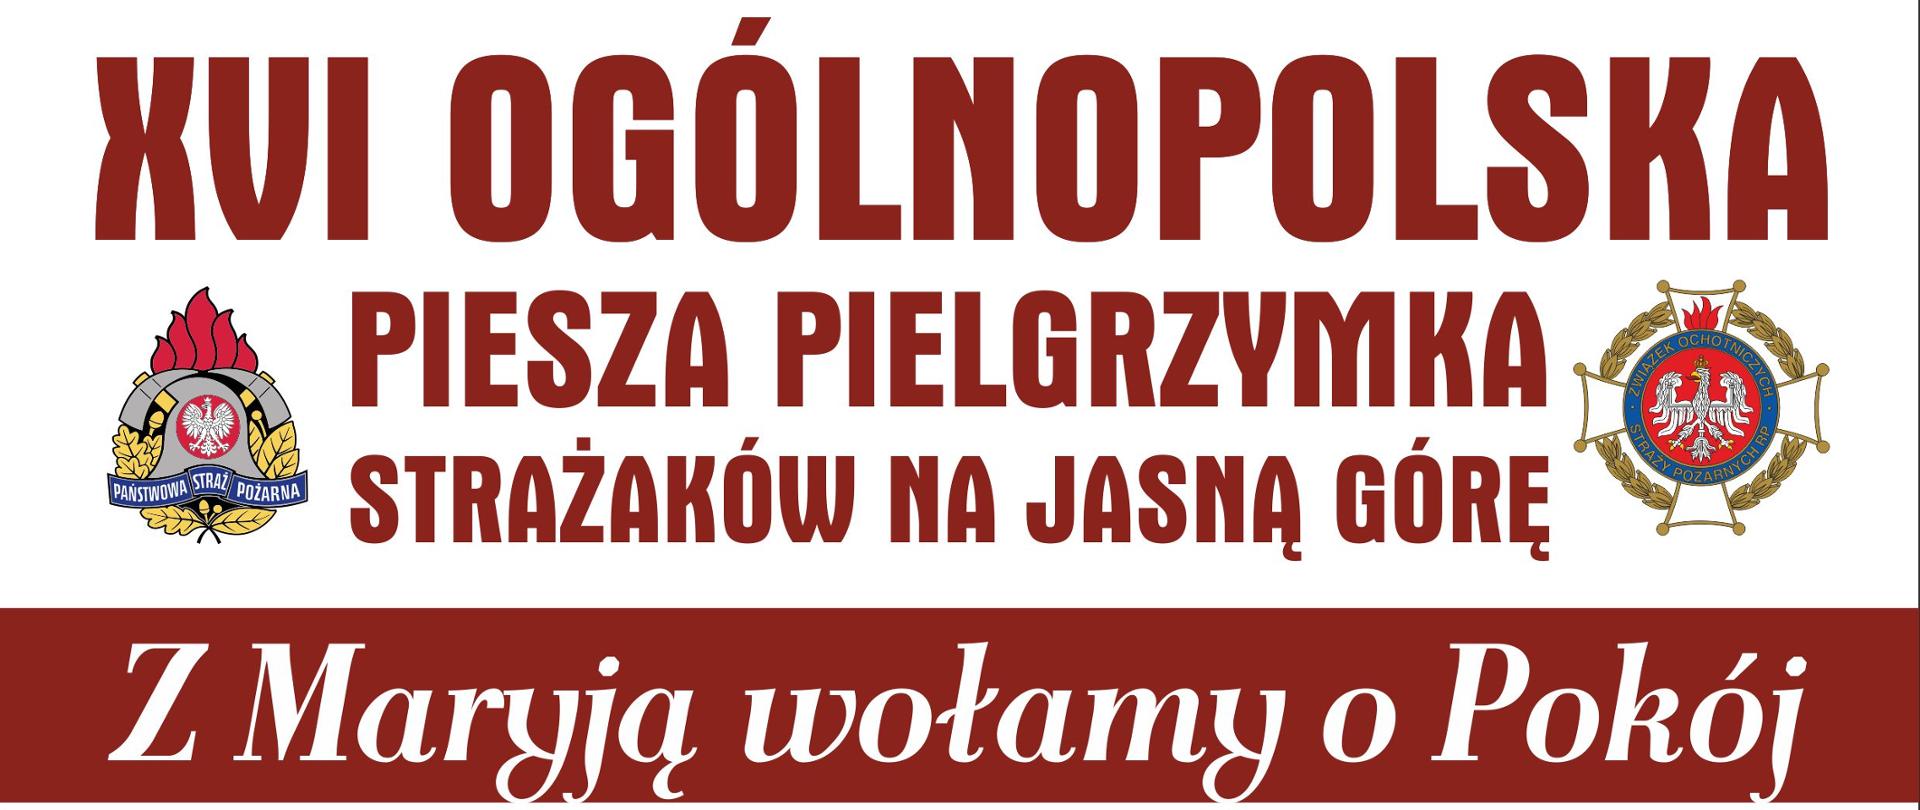 plakat XVI Ogólnopolskiej Pieszej Pielgrzymki Strażaków na Jasną Górę.